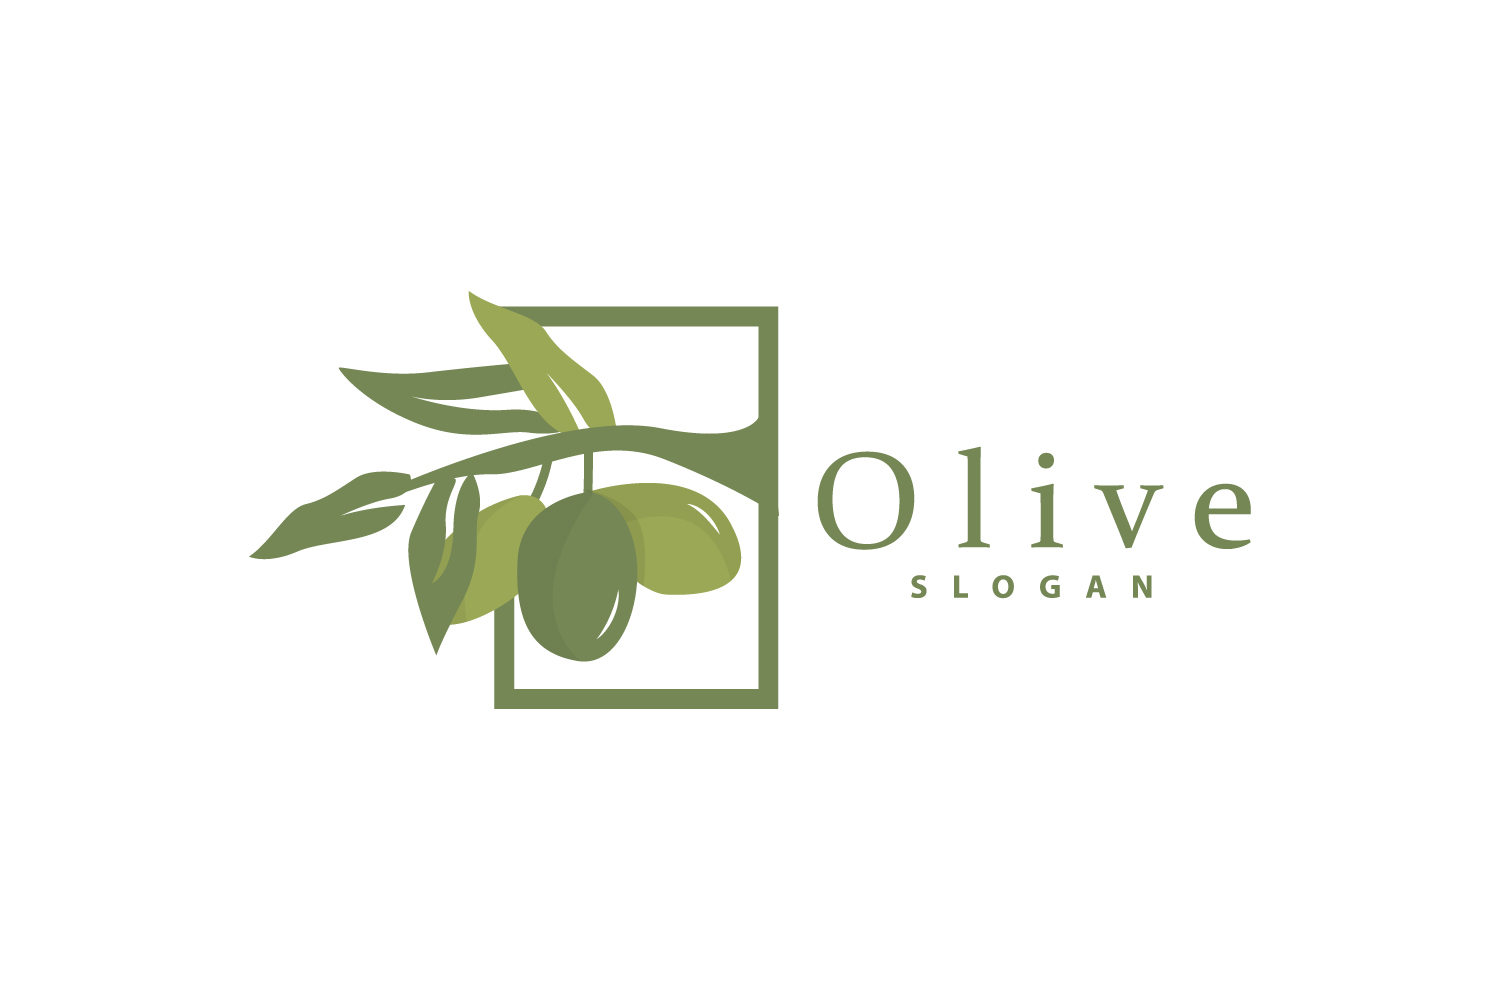 Olive Oil Logo Olive Leaf PlantV33